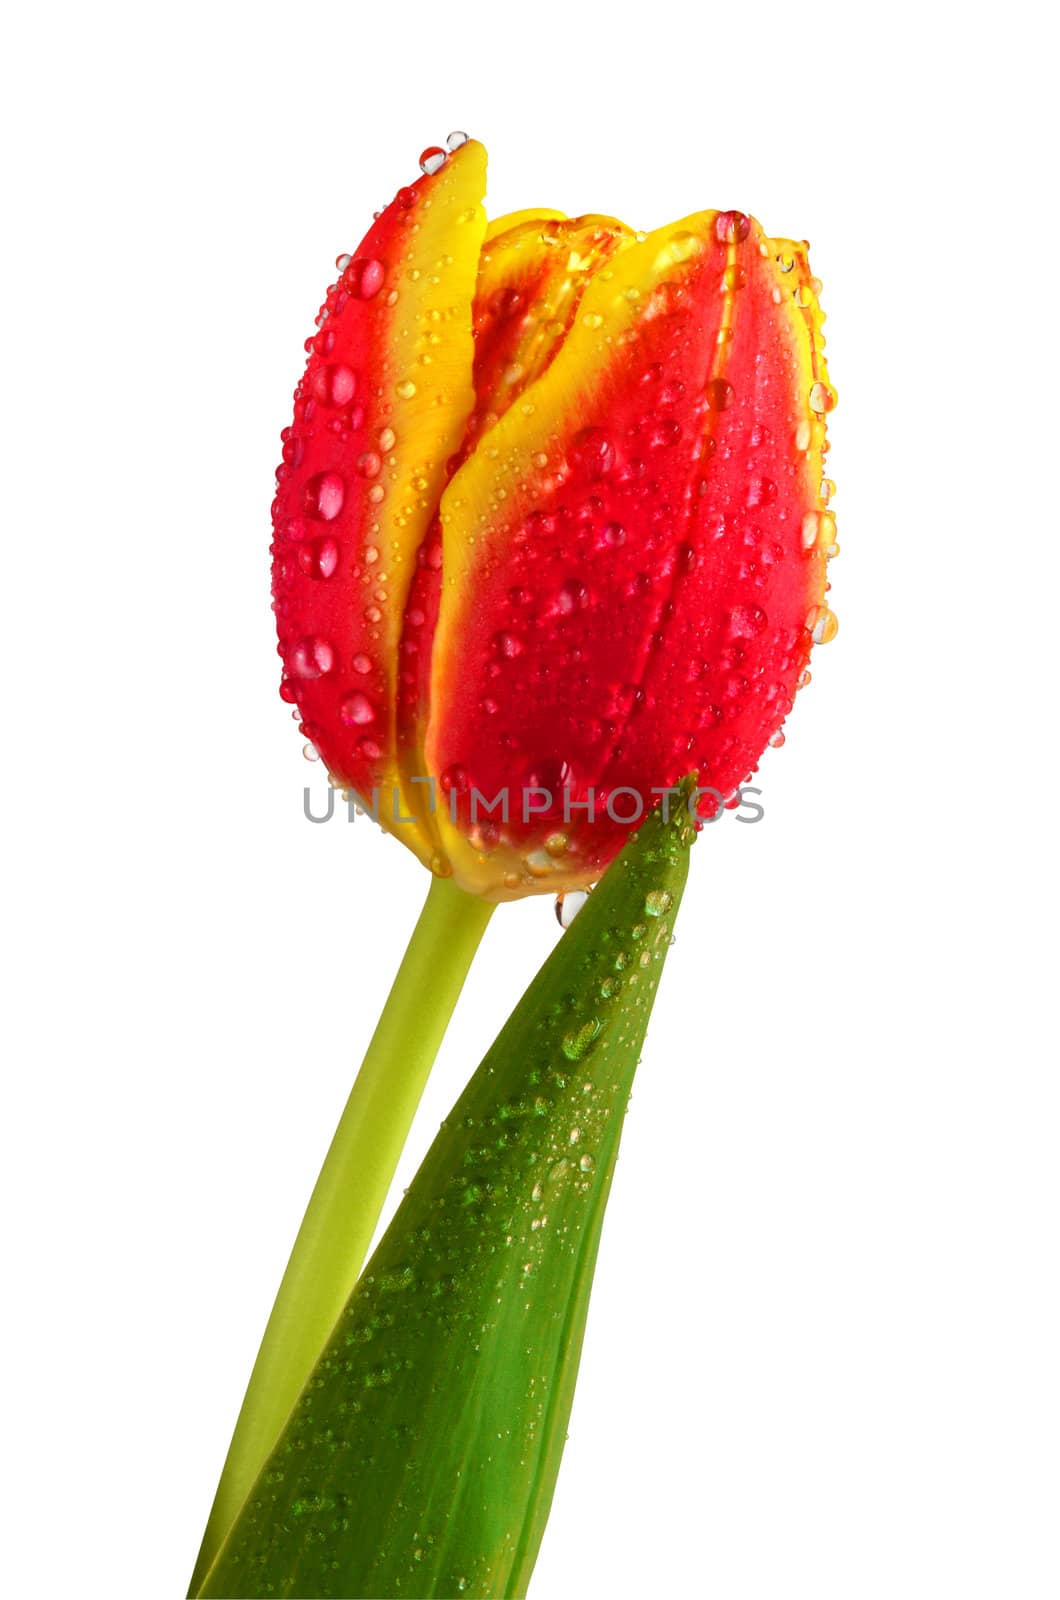 Wet tulip by Vectorex